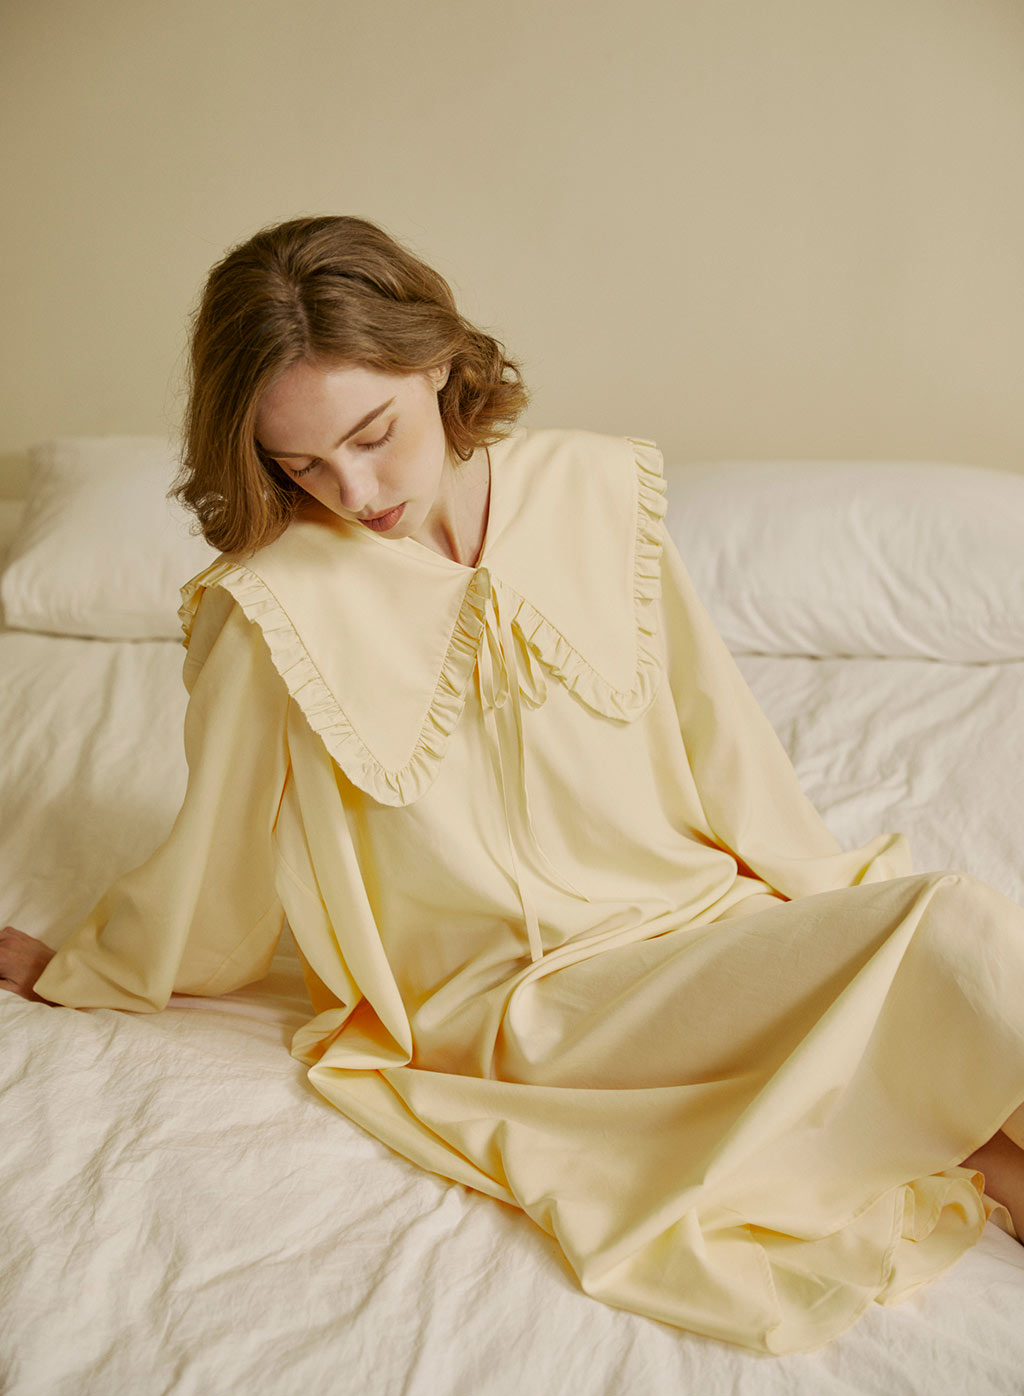 https://appapi.naploungewear.com/wp-content/uploads/2021/12/Puritan-Collar-Pajamas-Dress.jpg